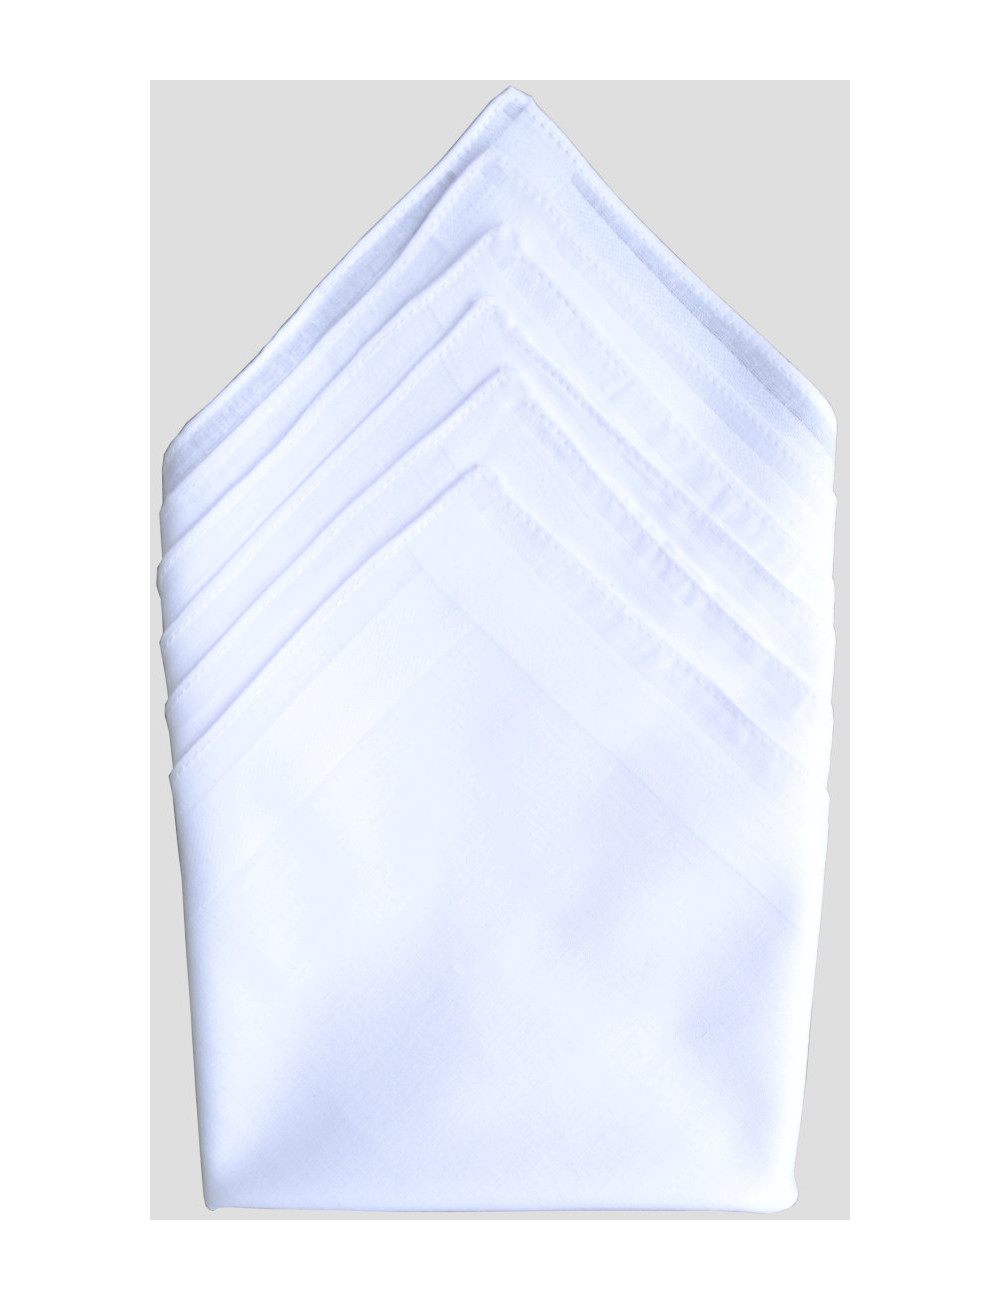 Hommes 3 Pack Uni Blanc Coton Mouchoirs 